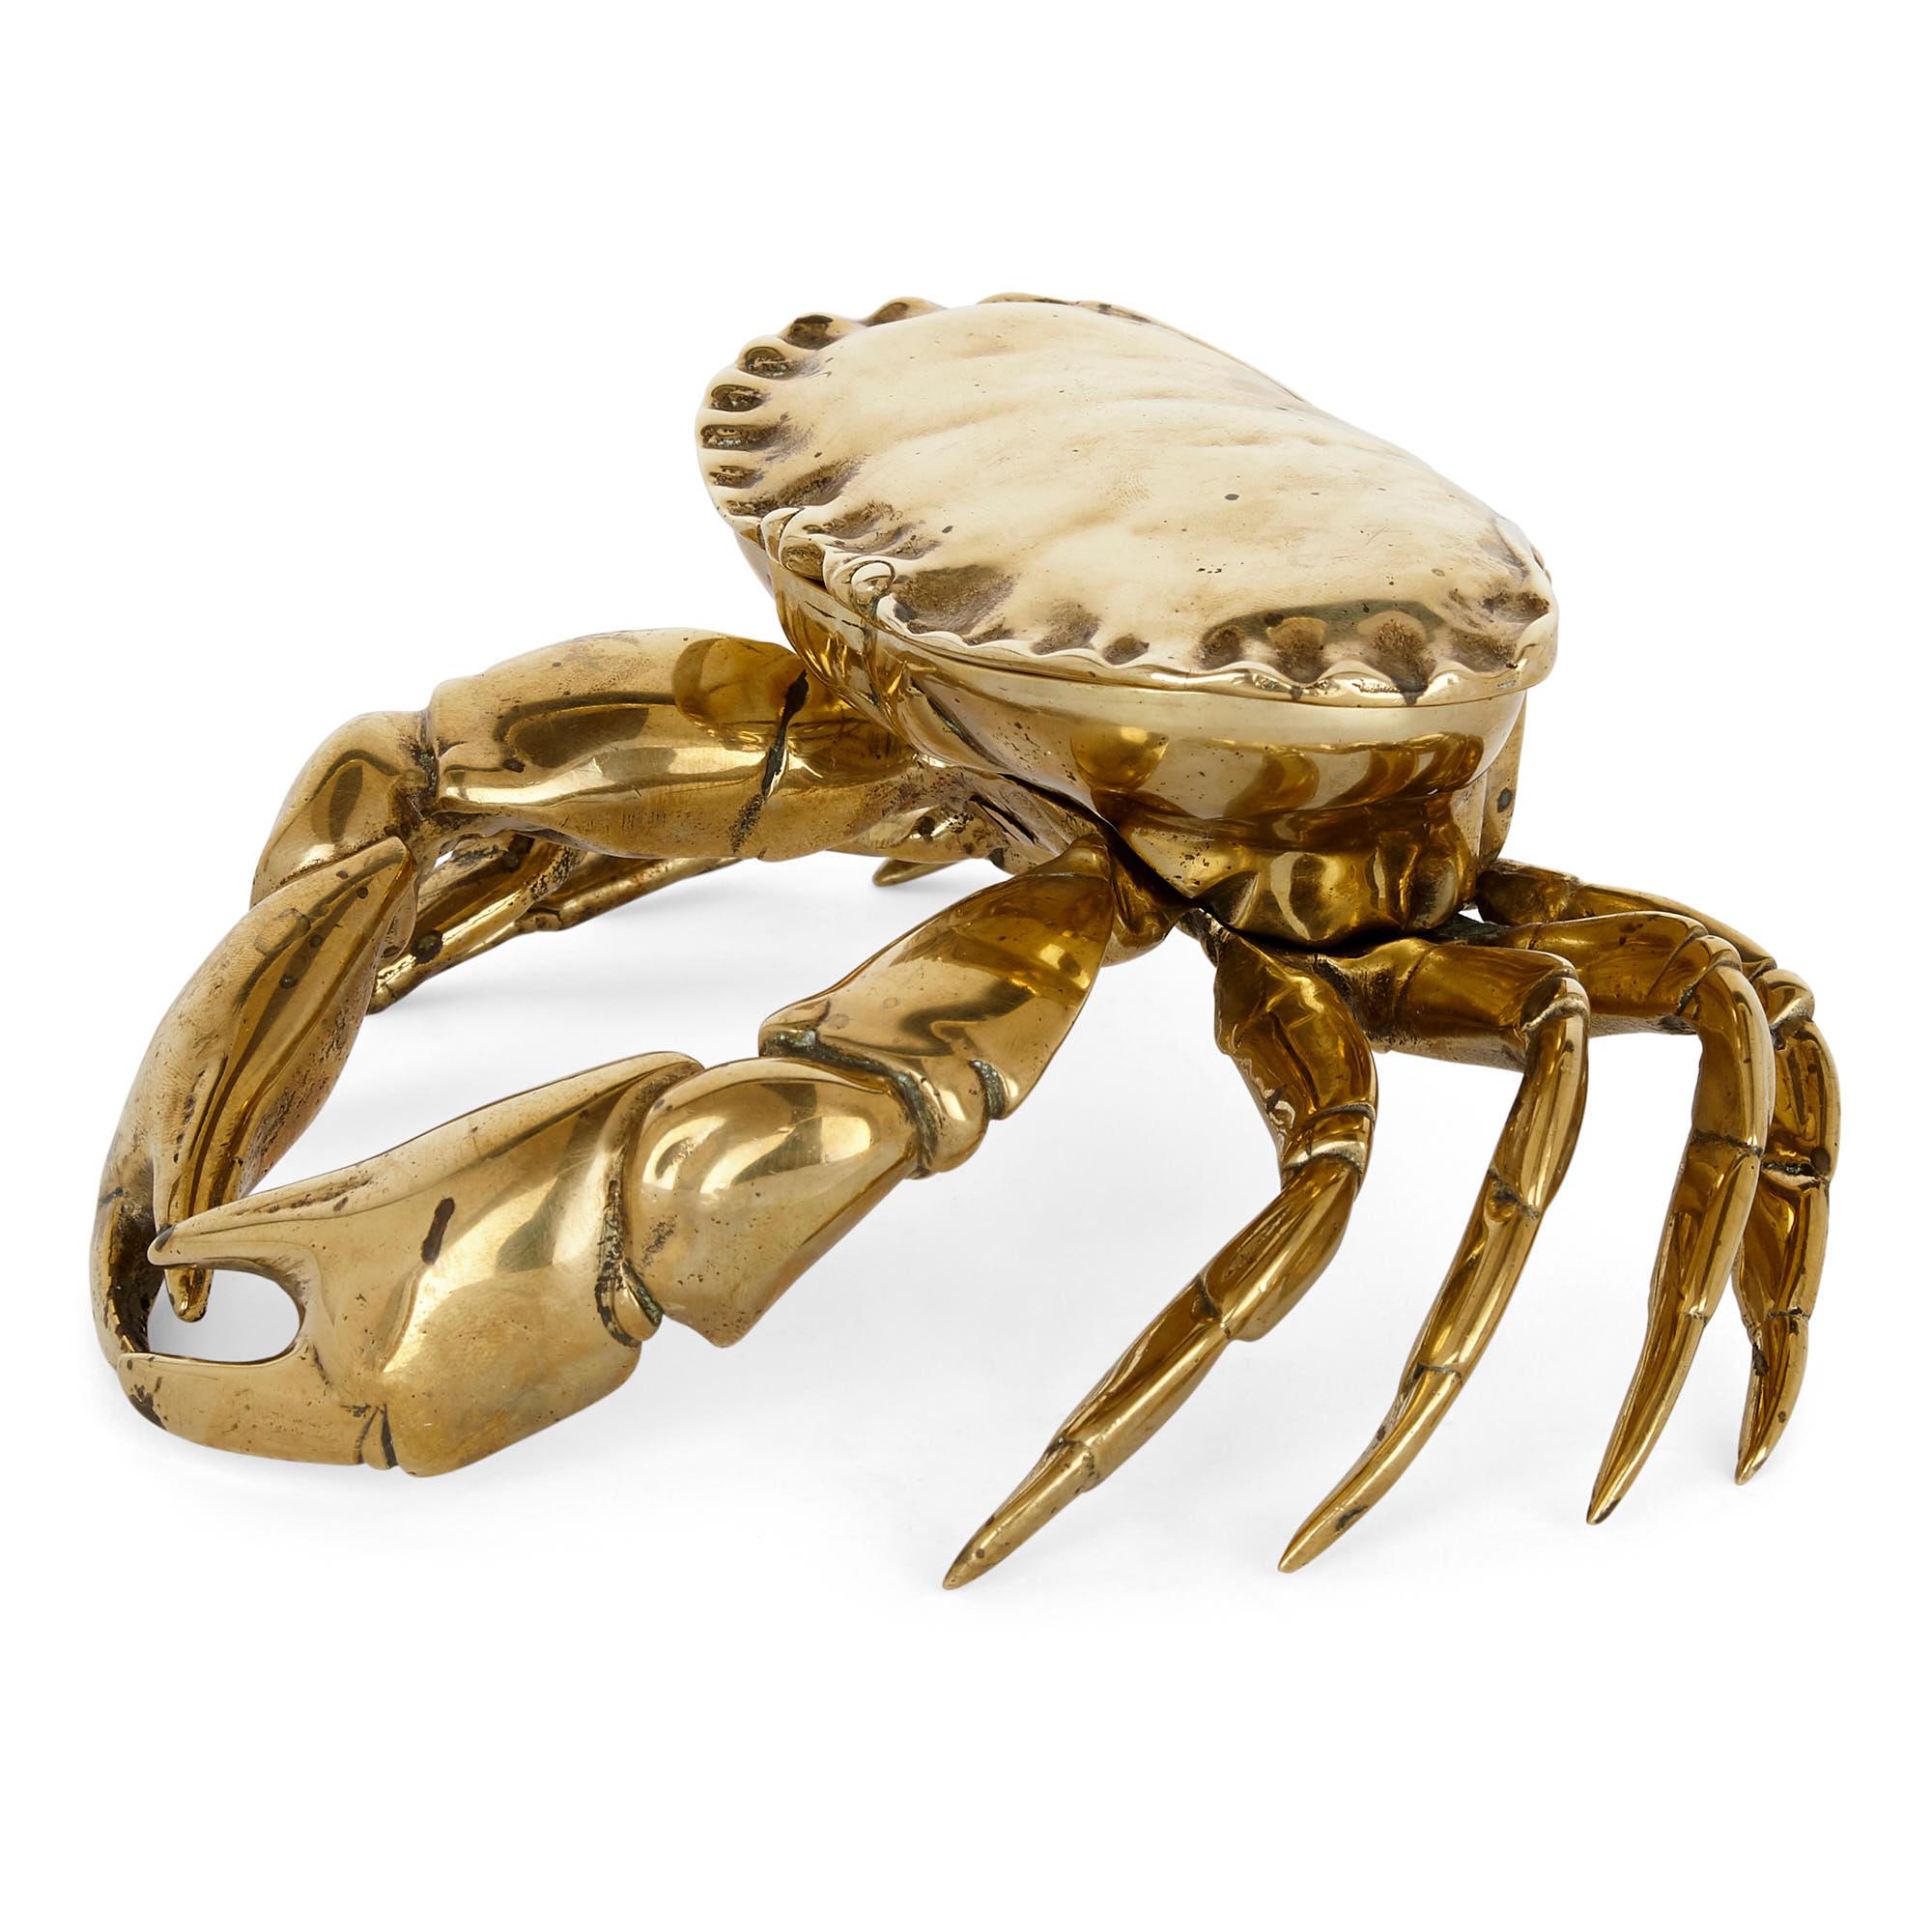 Encrier anglais inhabituel en laiton en forme de crabe
Anglais, fin du XIXe siècle
Mesures : Hauteur 8cm, largeur 18cm, profondeur 17cm

Ce charmant encrier en laiton prend la forme d'un crabe au modelé naturel. La partie supérieure du crabe,